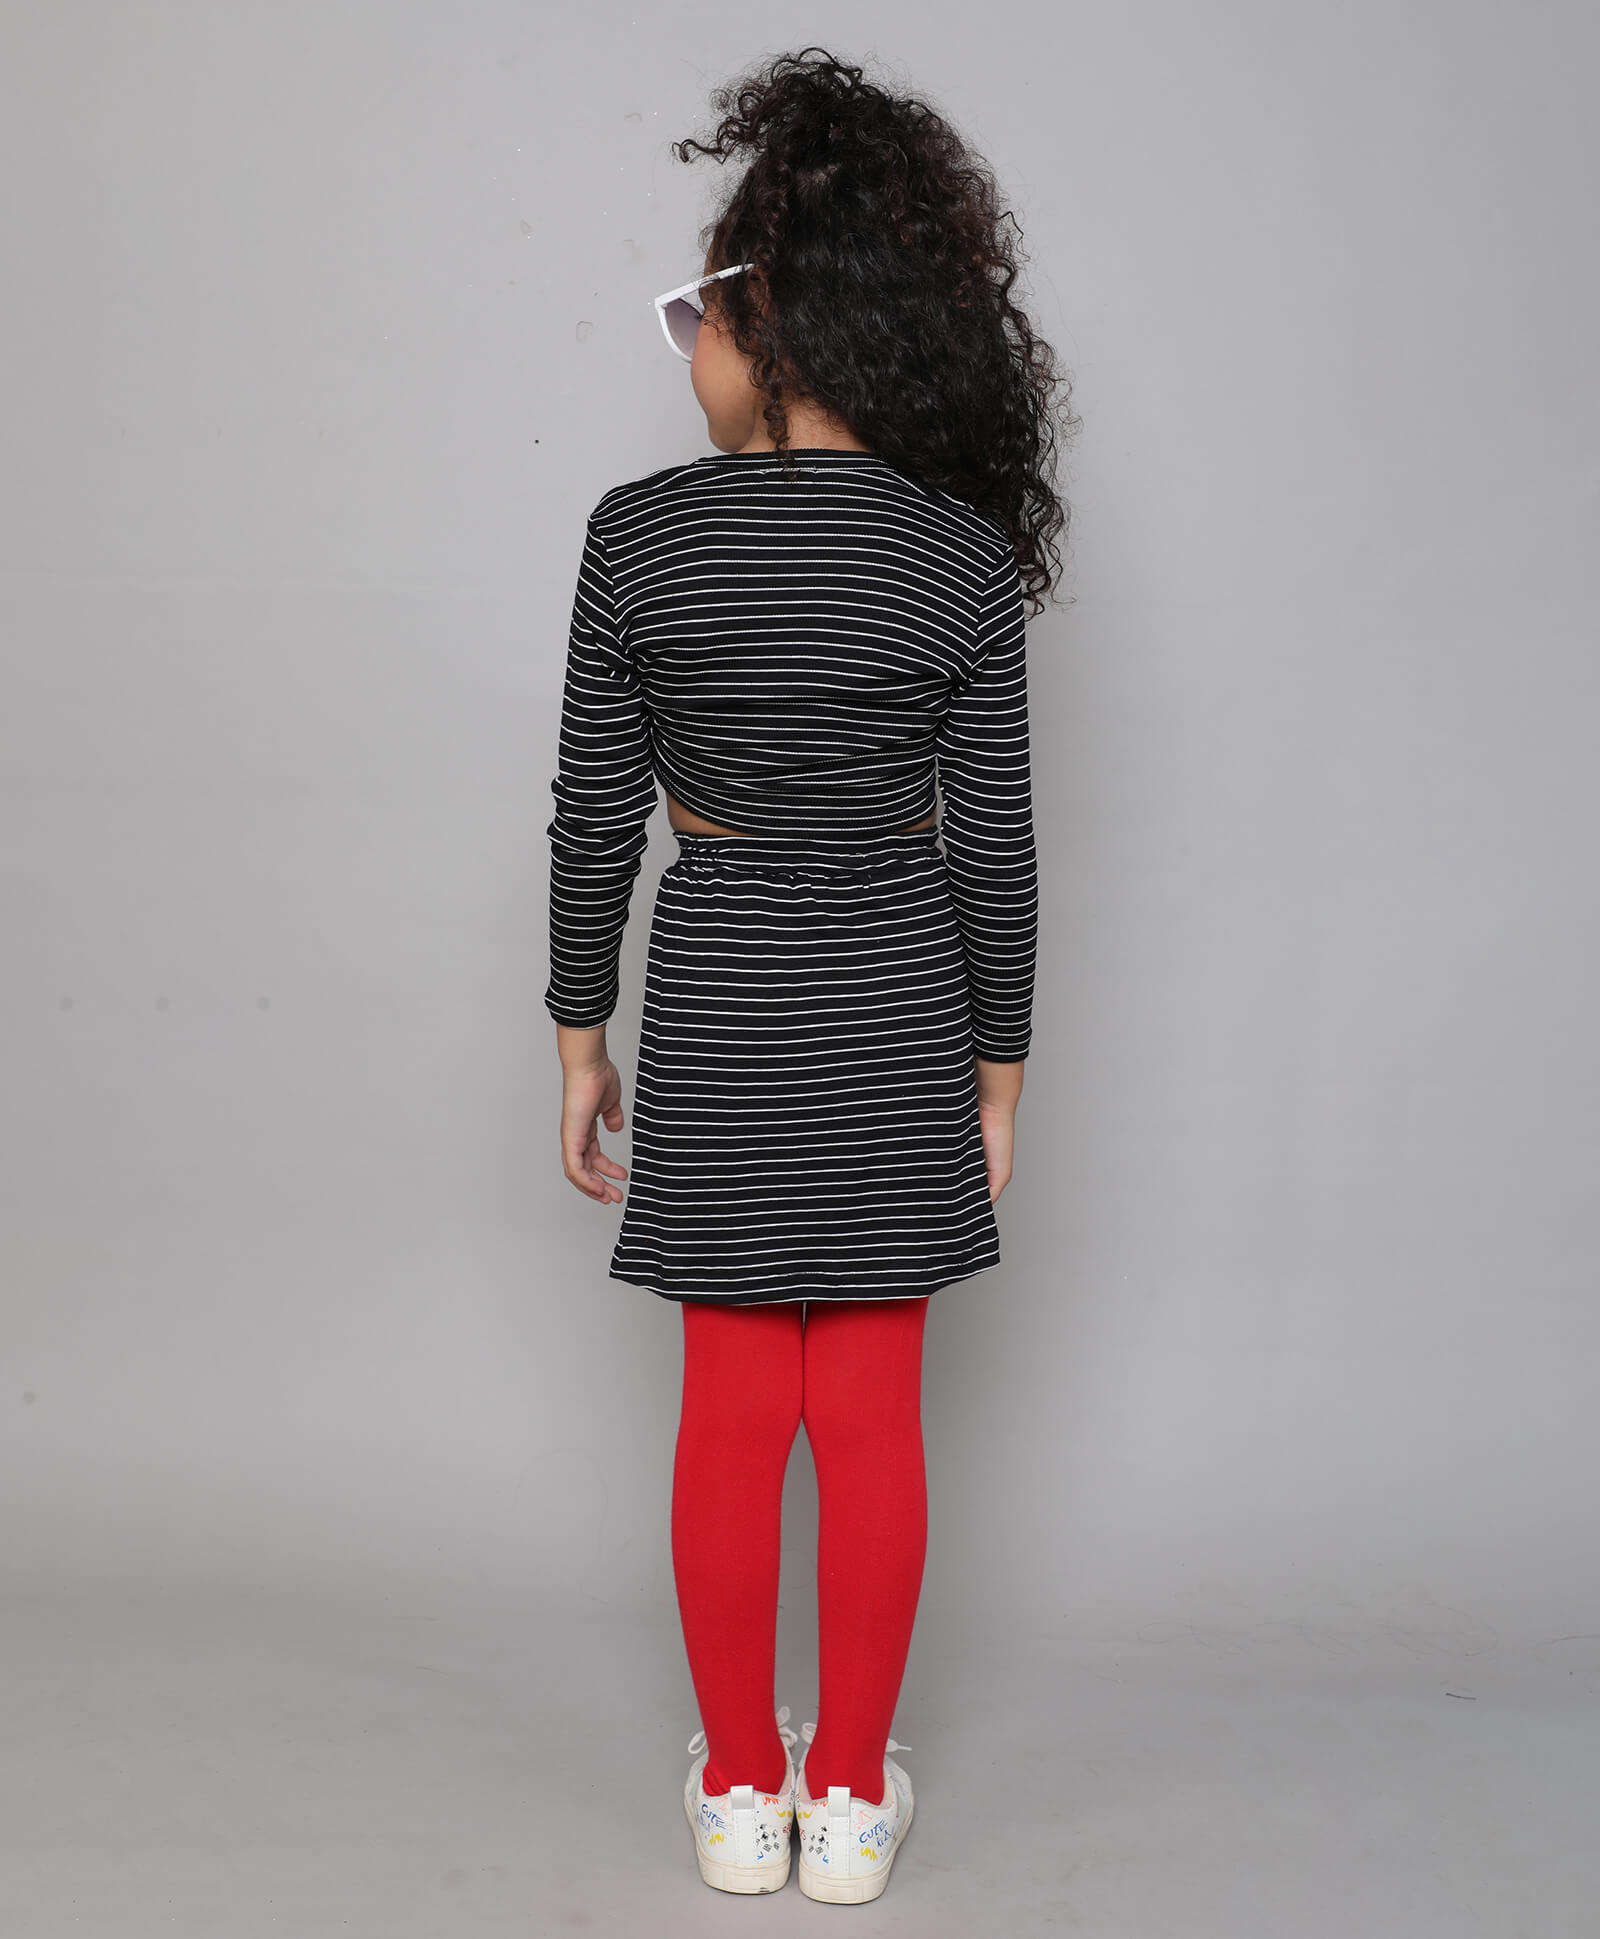 Girls Black White Stripes Full Sleeve Crop Top and Short Skirt Set